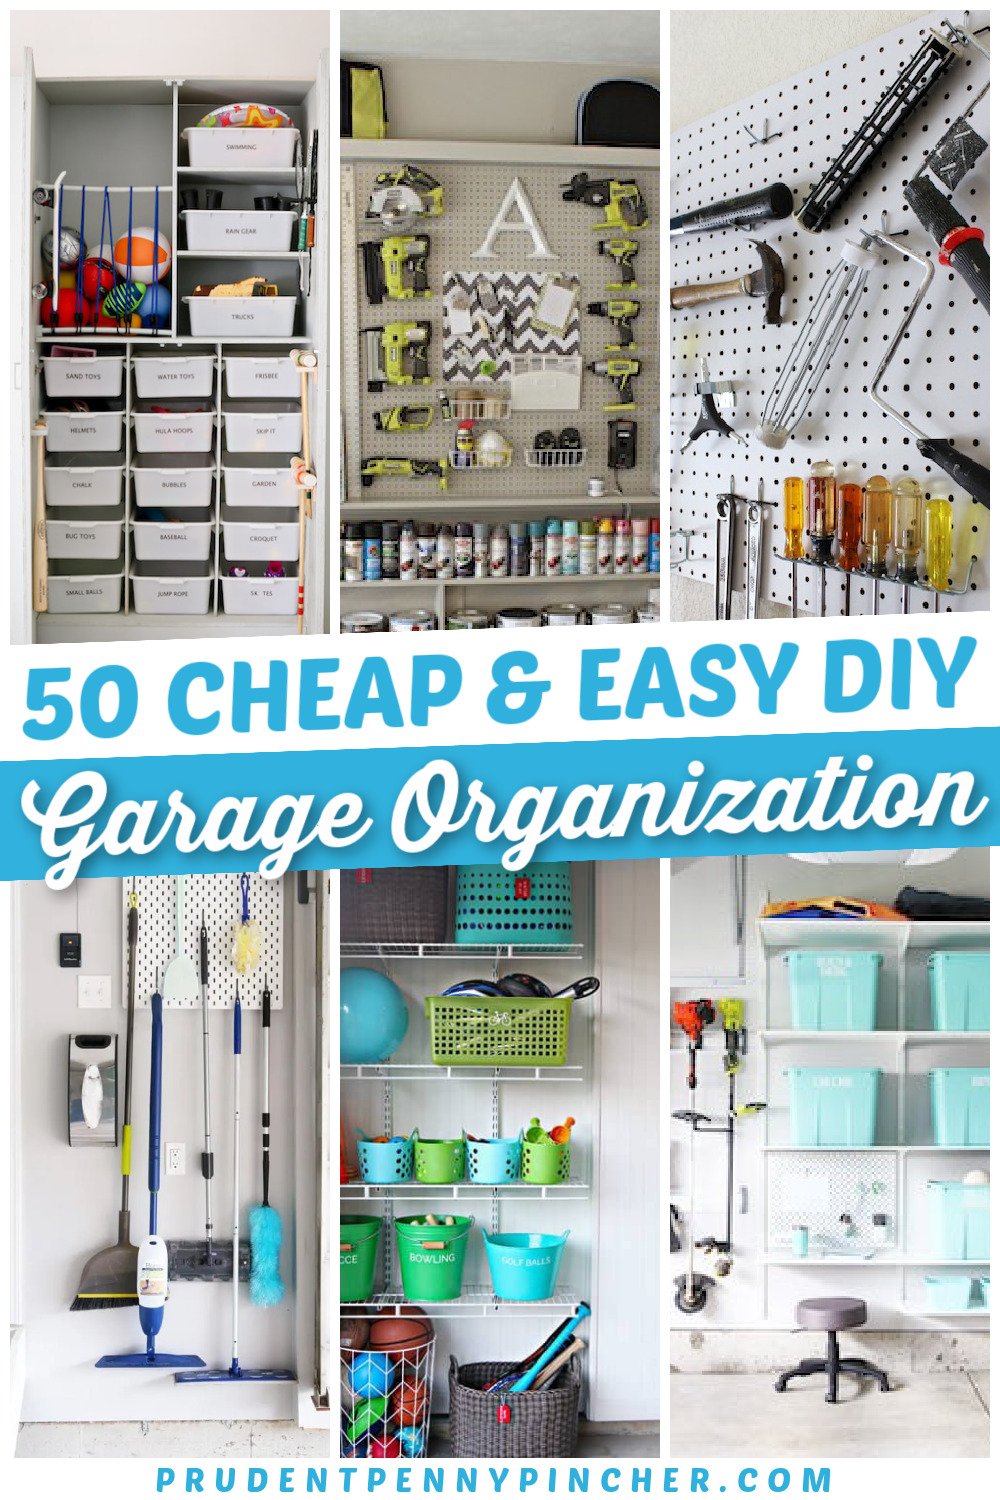 Garage Organization 101: Declutter and Create Efficient Storage